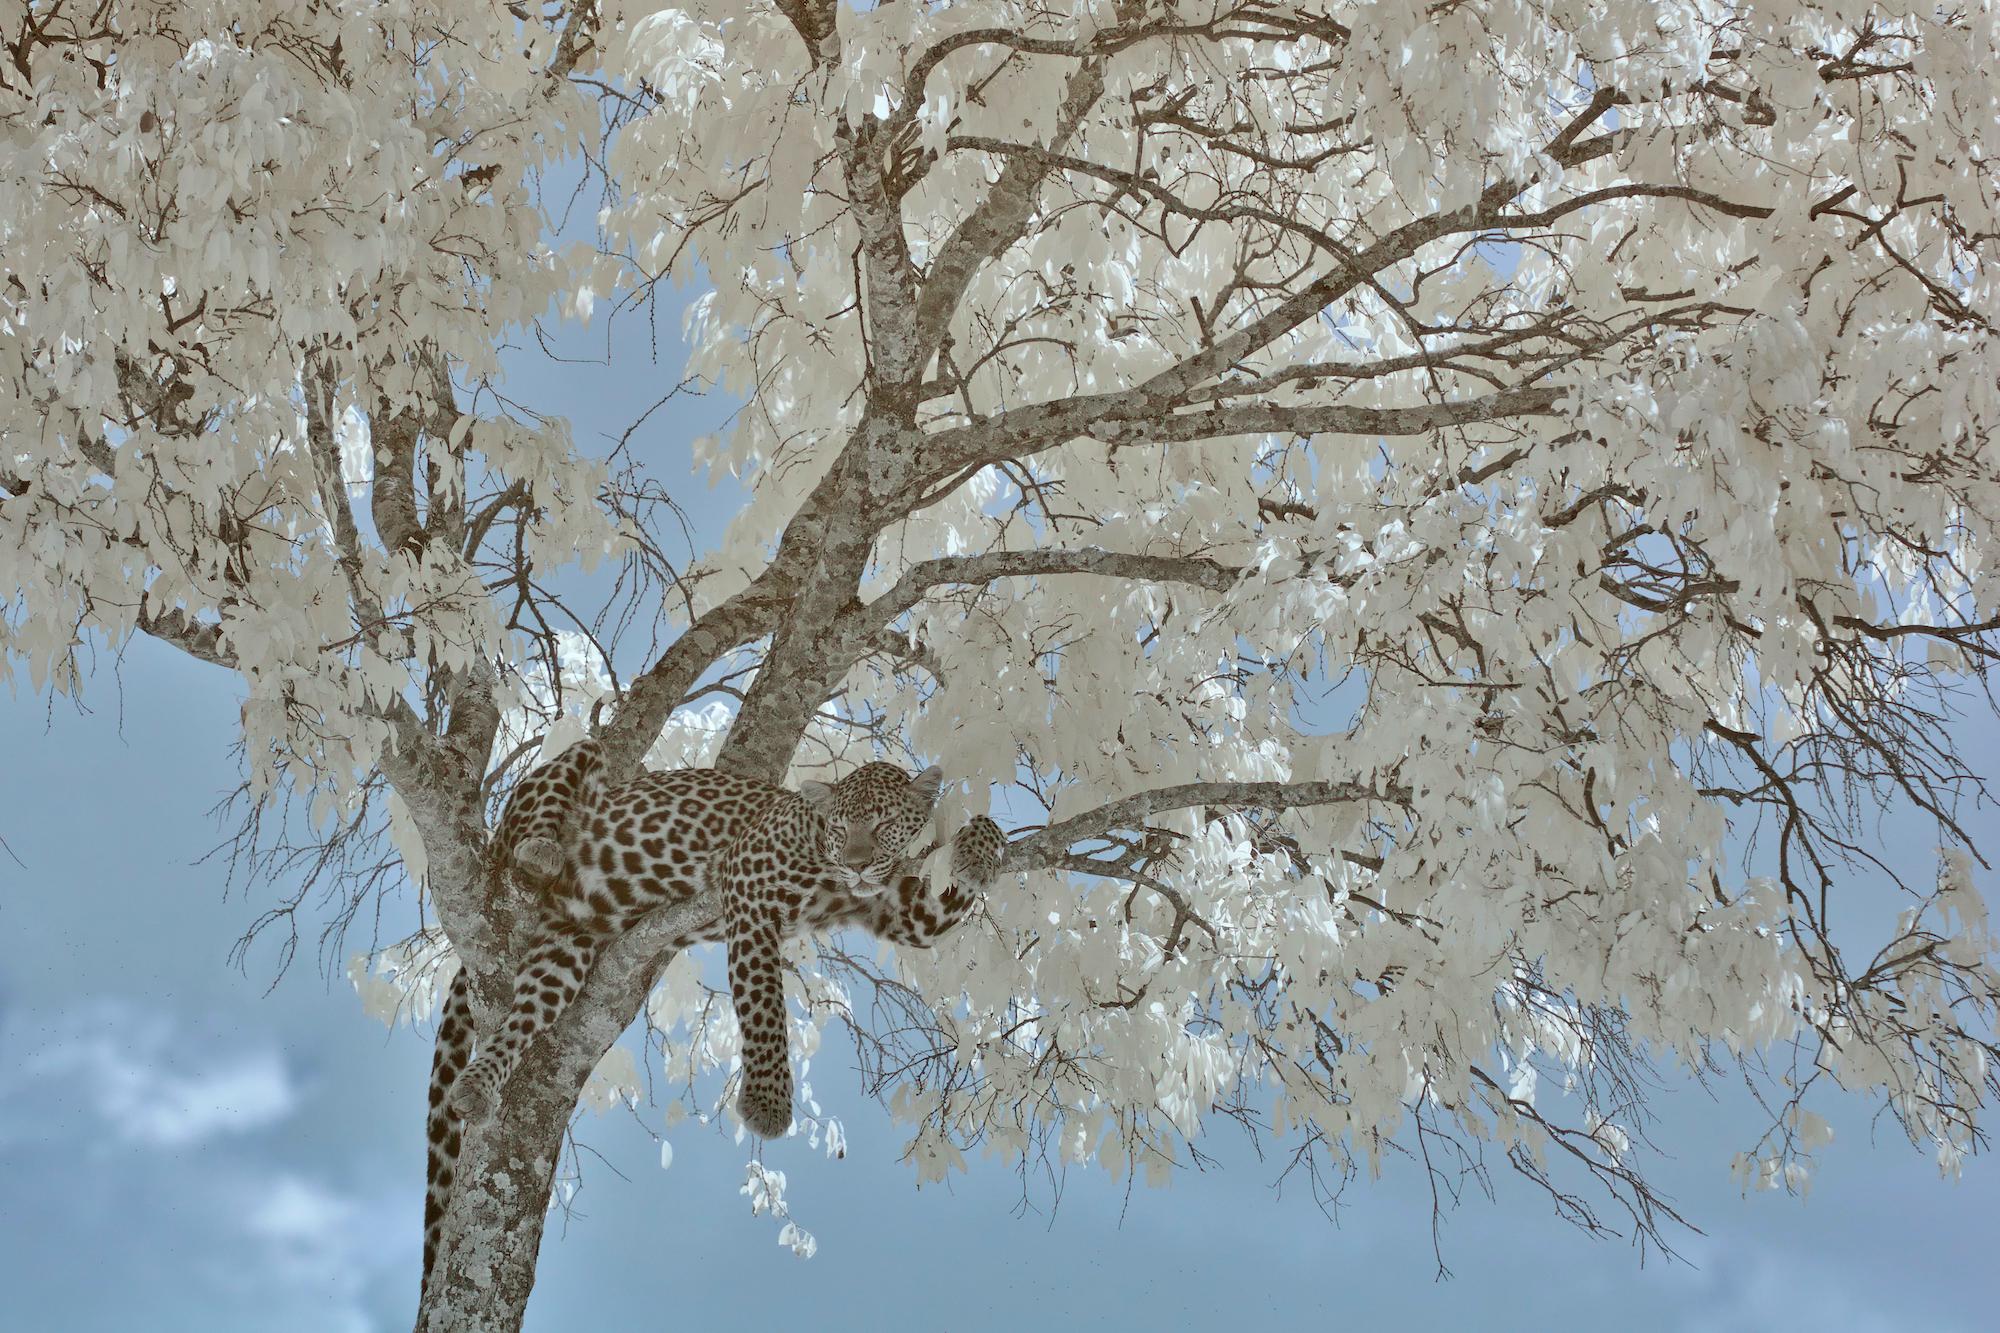 Aditya Dicky Singh Landscape Photograph – Tier-Landschaftsfotografie Leopard  Blau Weiß Schwarz Baum Kenia Nature Wildlife